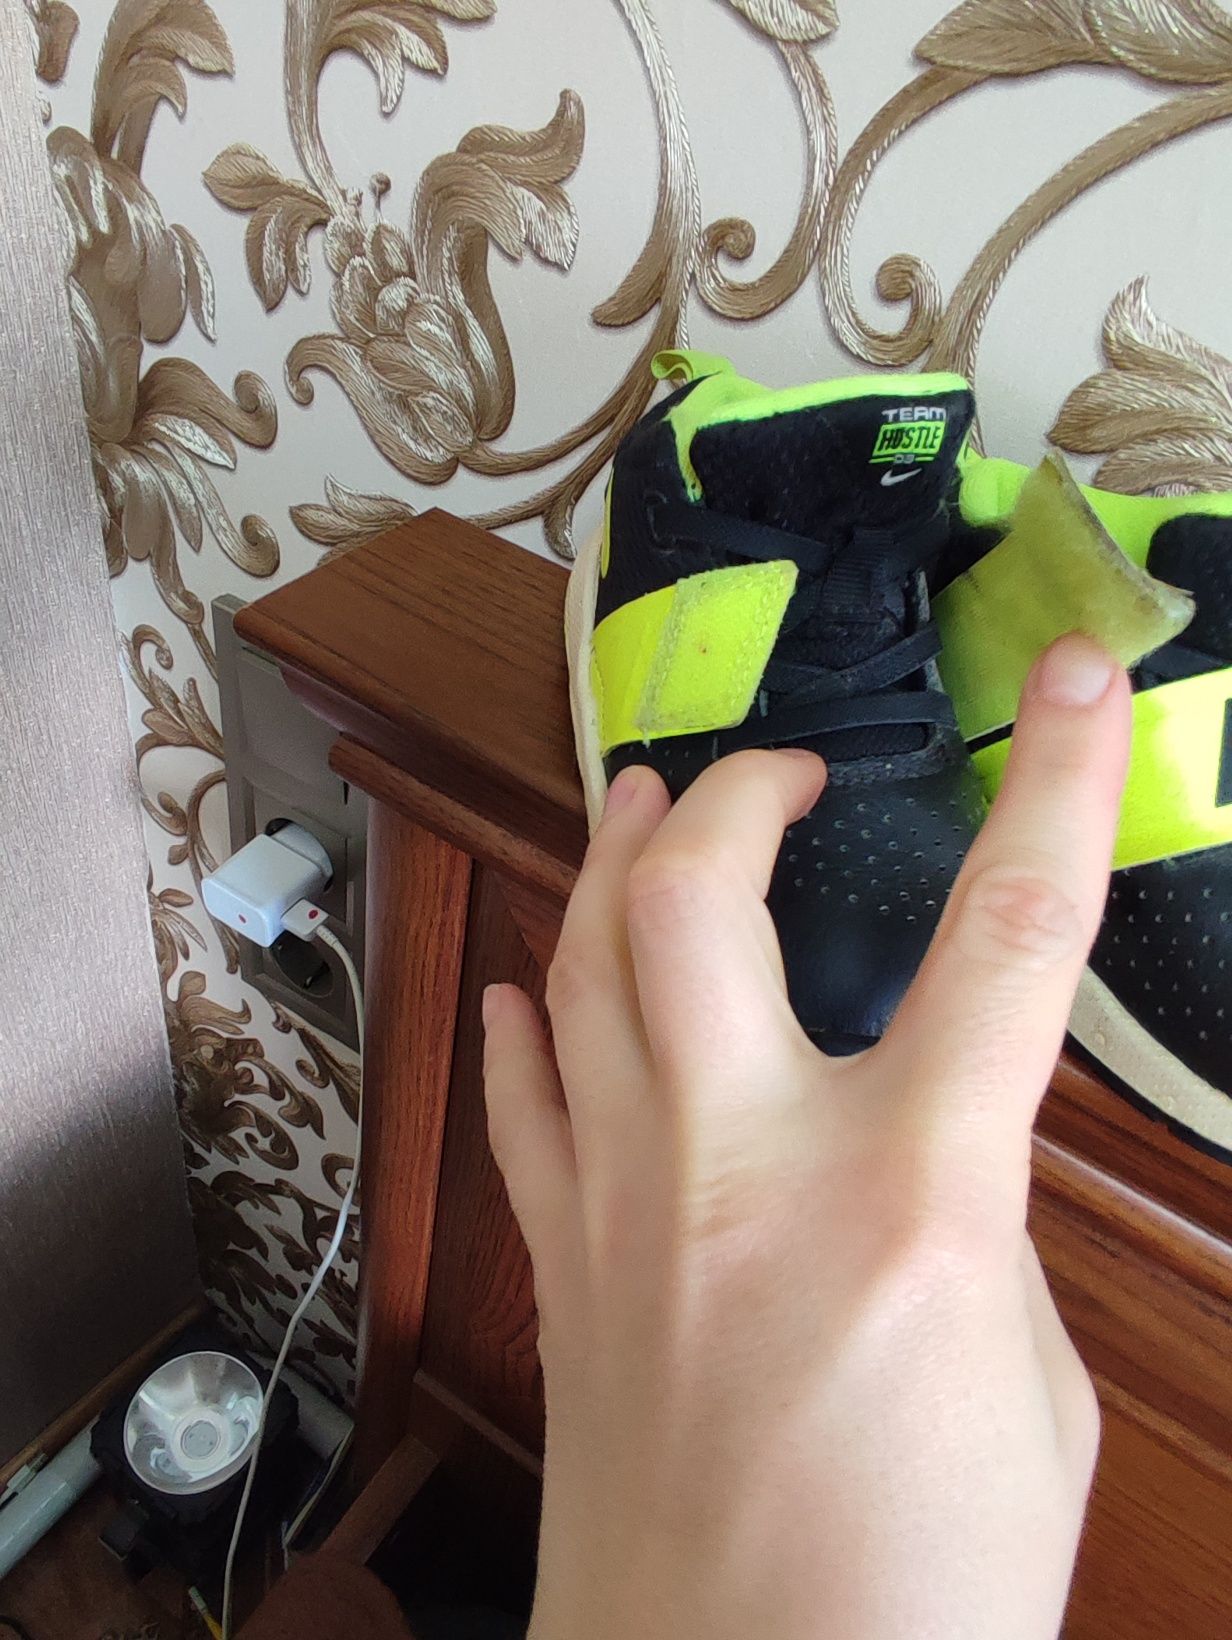 Кросівки Nike  оригінал, на хлопчика 23.5 р